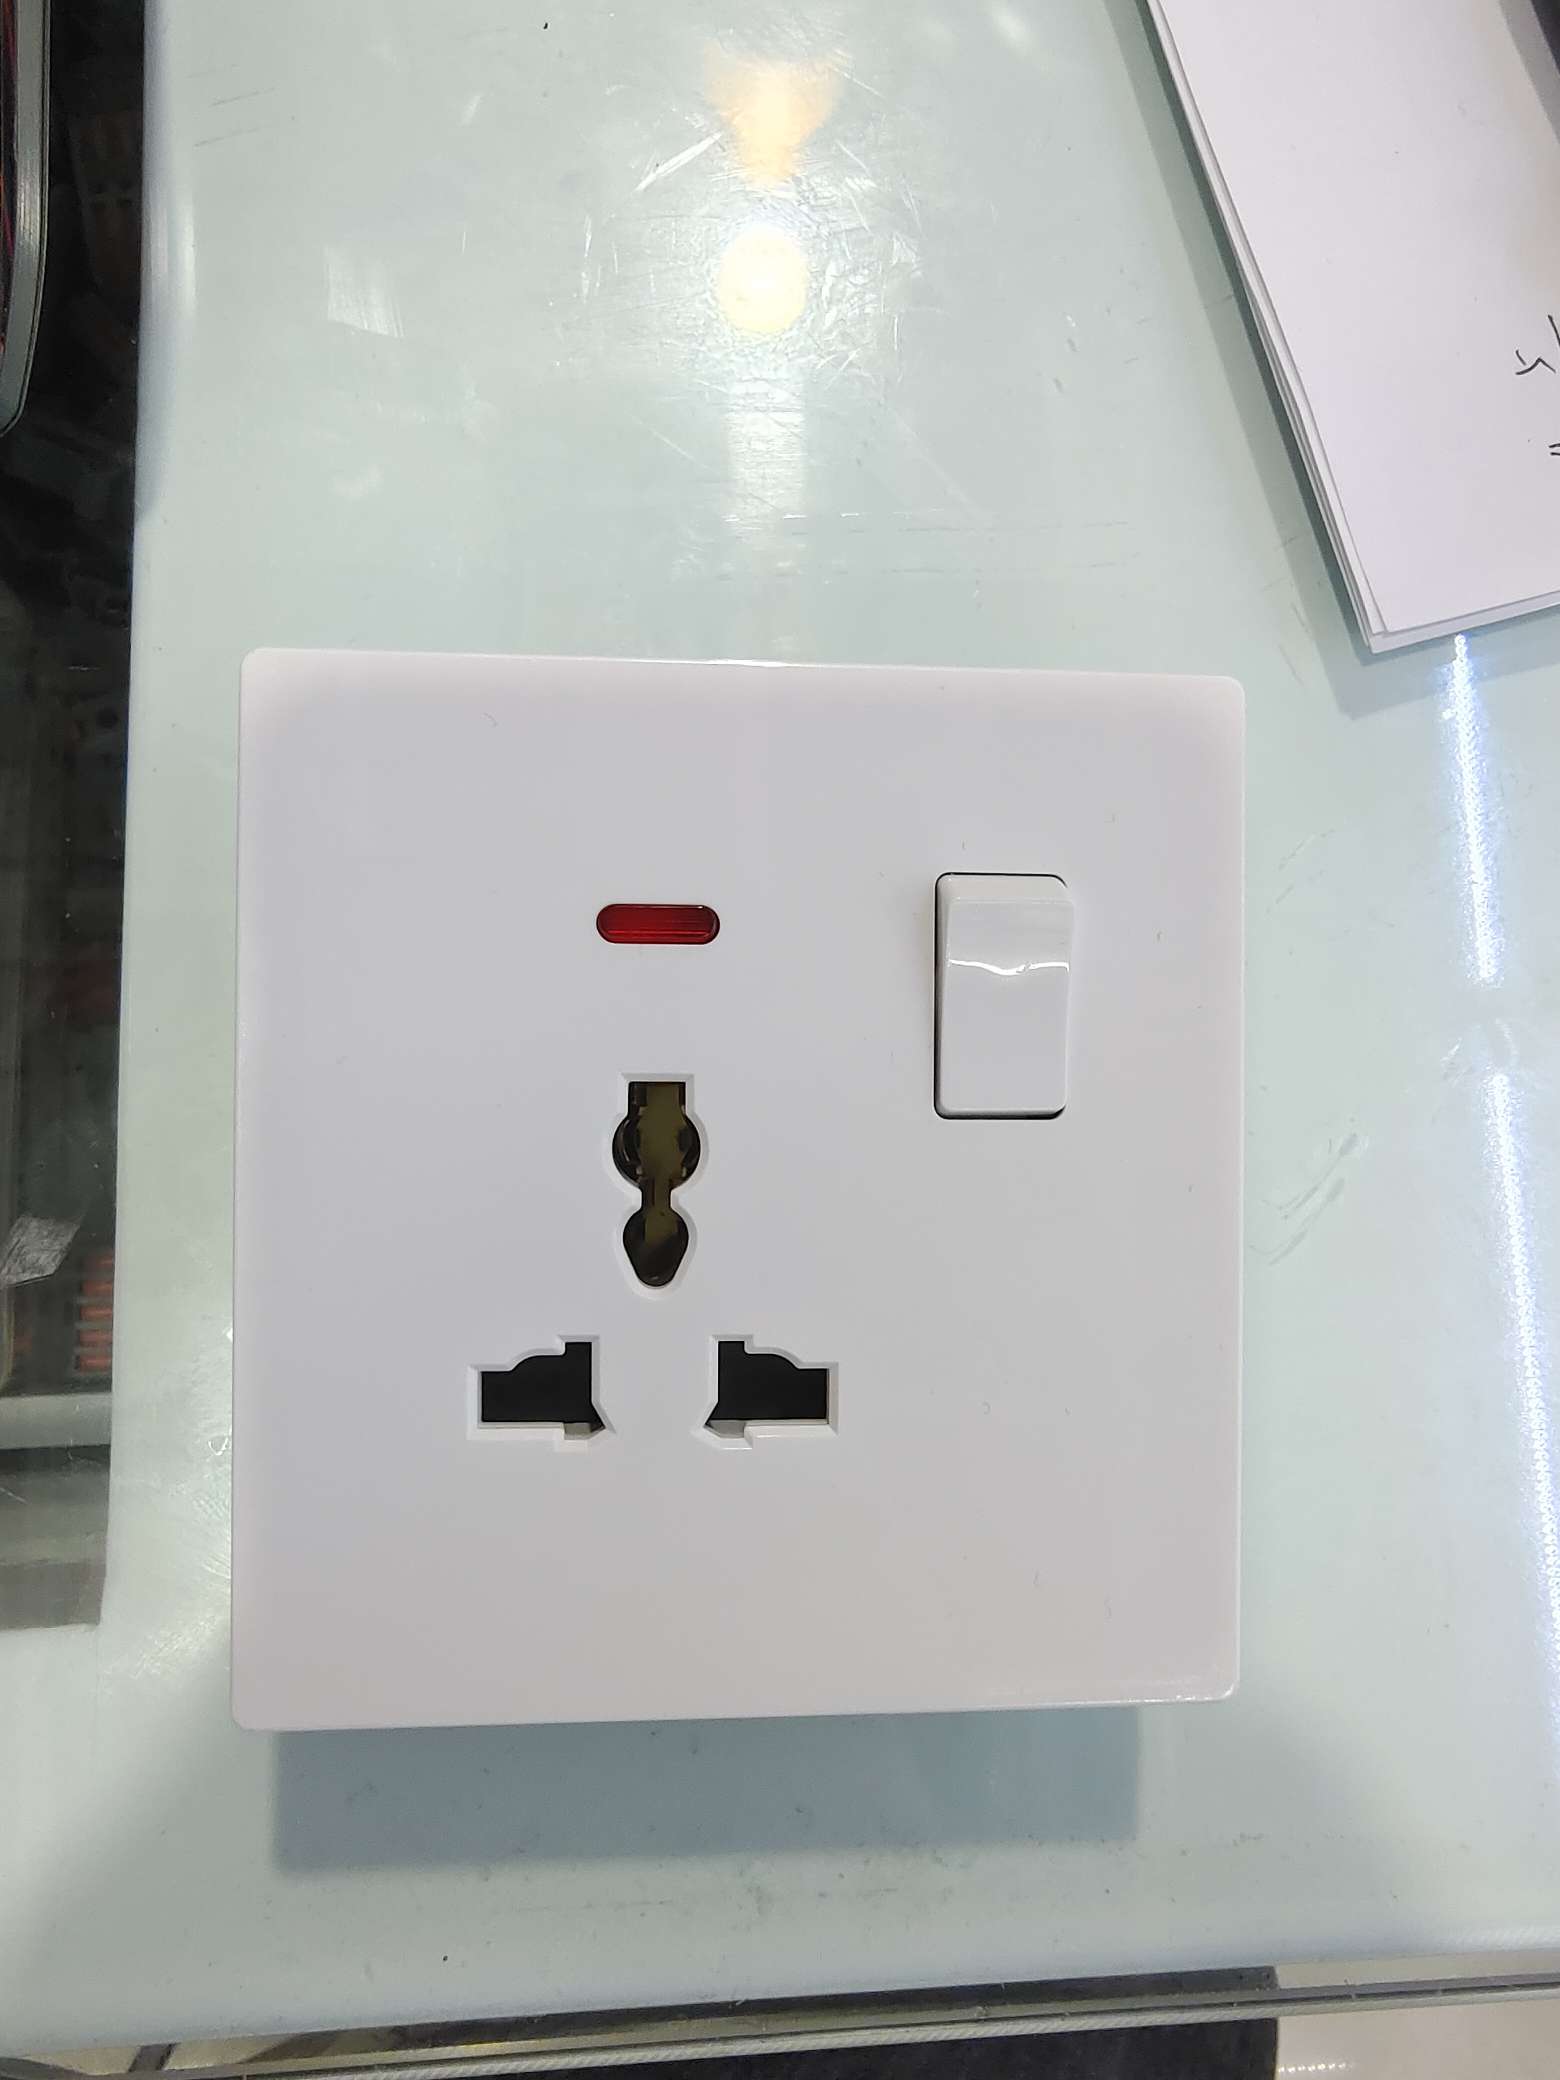 86版 13A多功能三孔插座 有按钮 带红色显示灯 墙壁开关 工厂价 质量保证 图